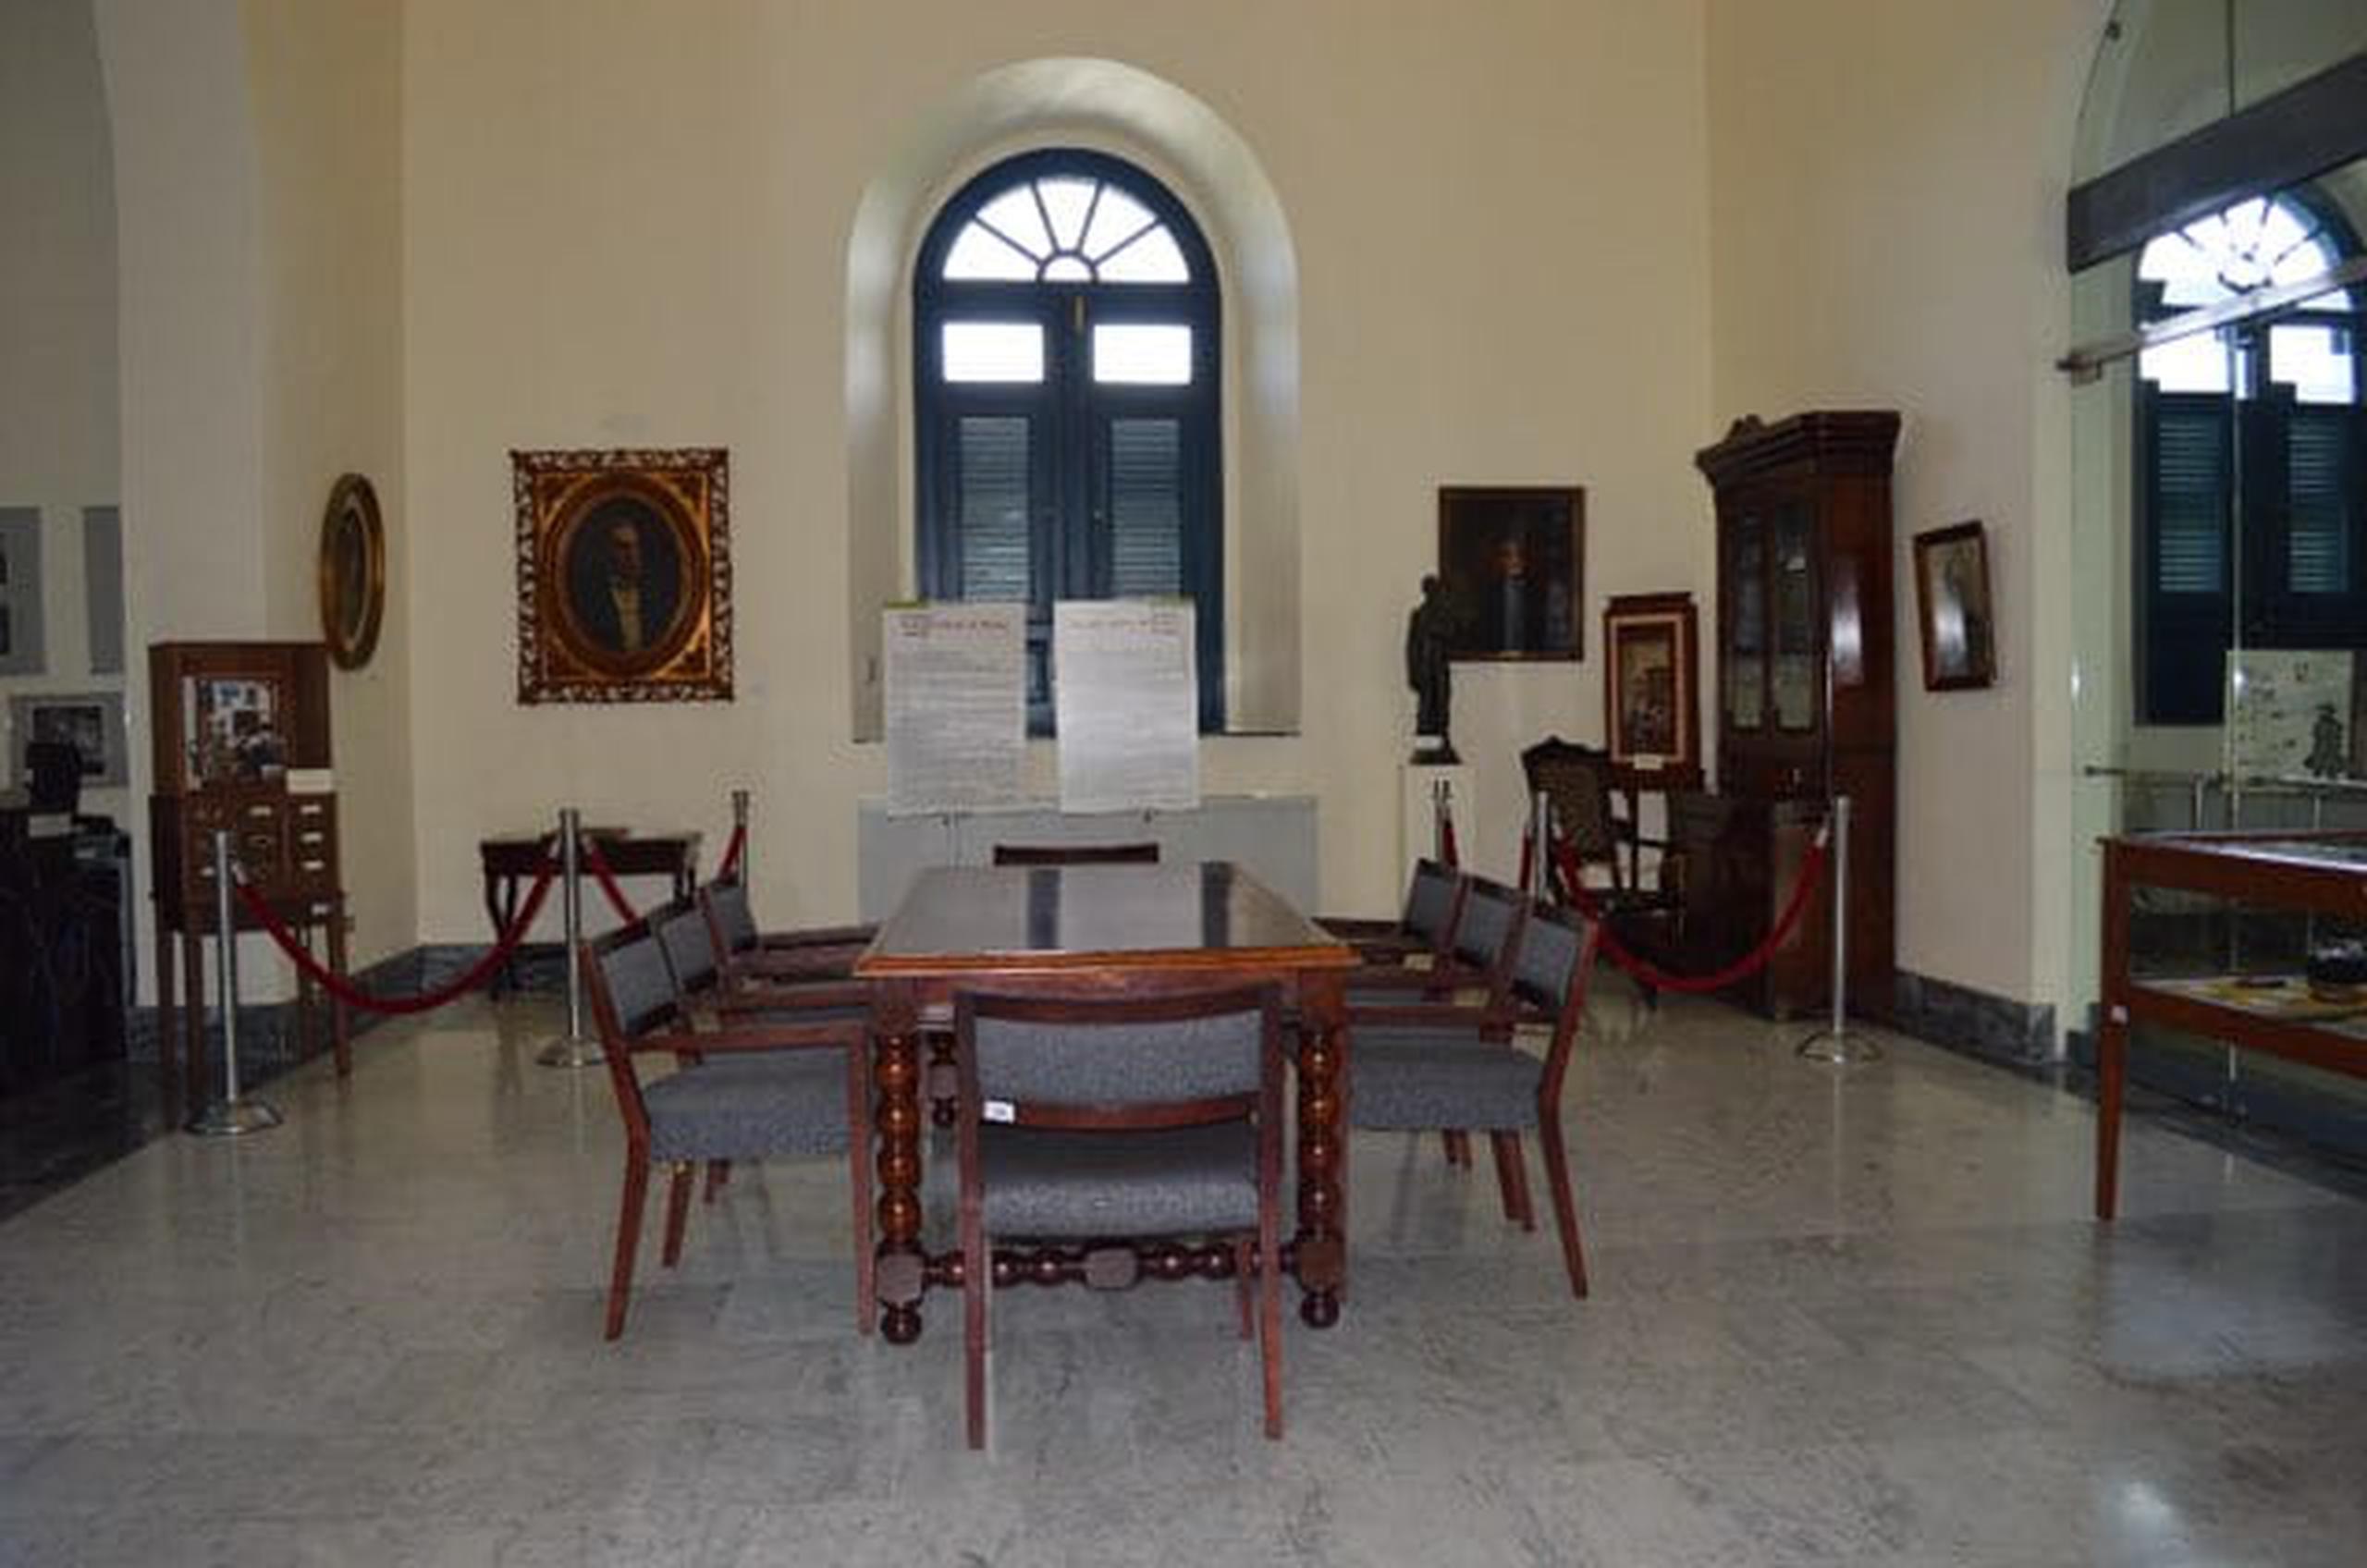 El director ejecutivo del ICP, Carlos Ruiz Cortés, indicó en declaraciones escritas que están comprometidos con la protección y recuperación necesaria de todas las colecciones del Archivo General y la Biblioteca Nacional, incluyendo la Sala Eugenio María de Hostos.